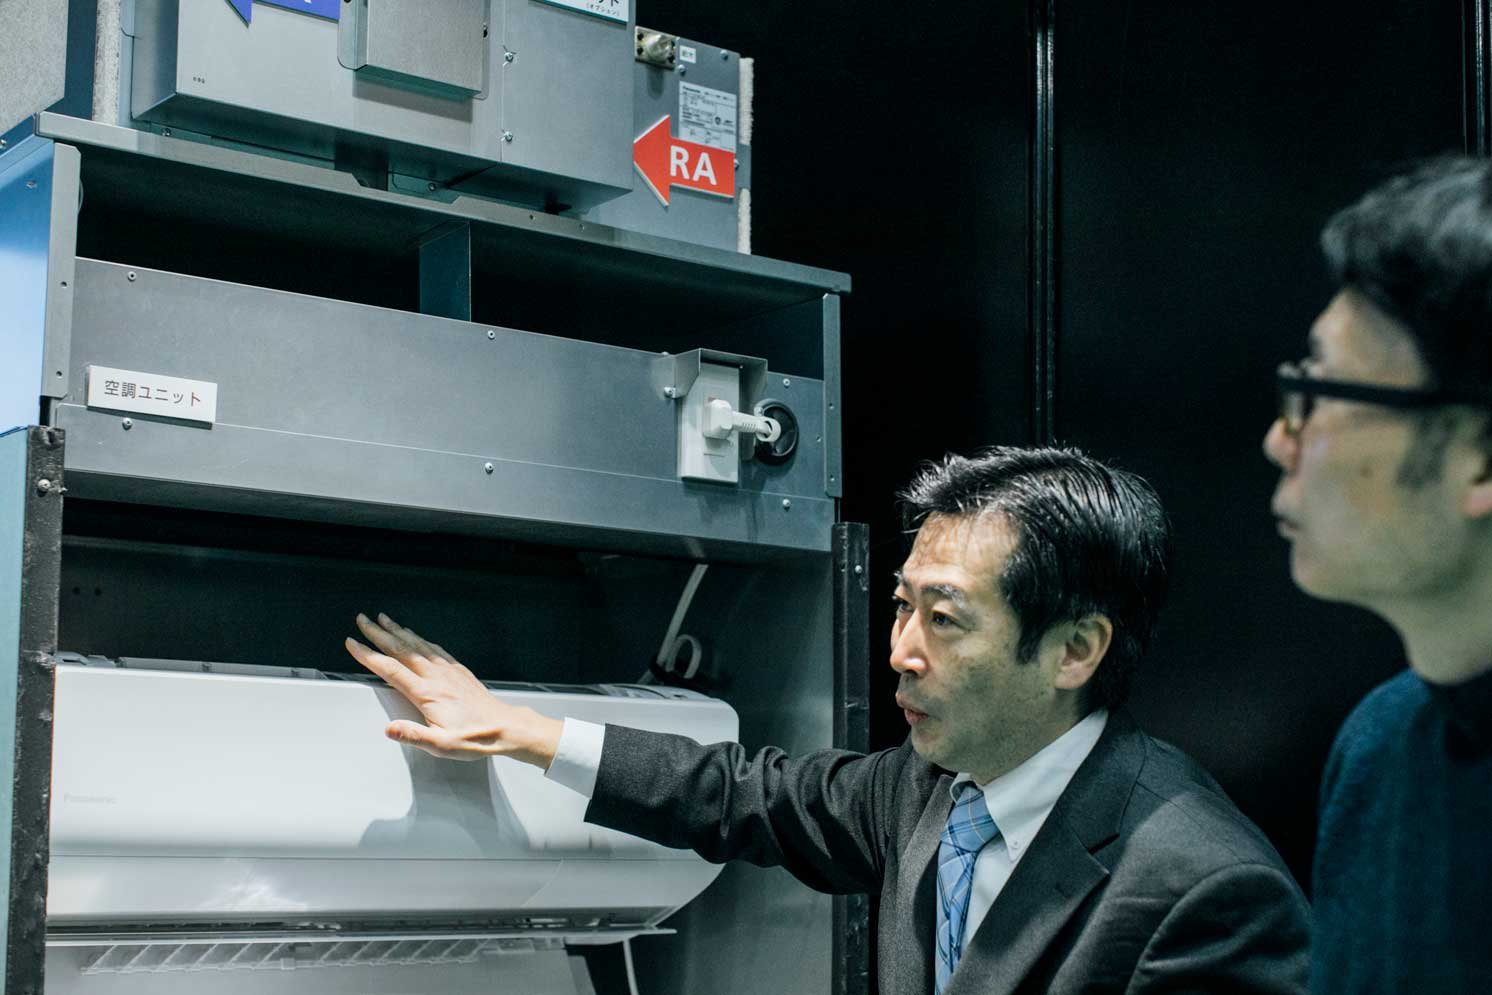 空調ユニットを説明する中曽根さんの写真 | Make New Magazine「未来の定番」をつくるために、パナソニックのリアルな姿を伝えるメディア